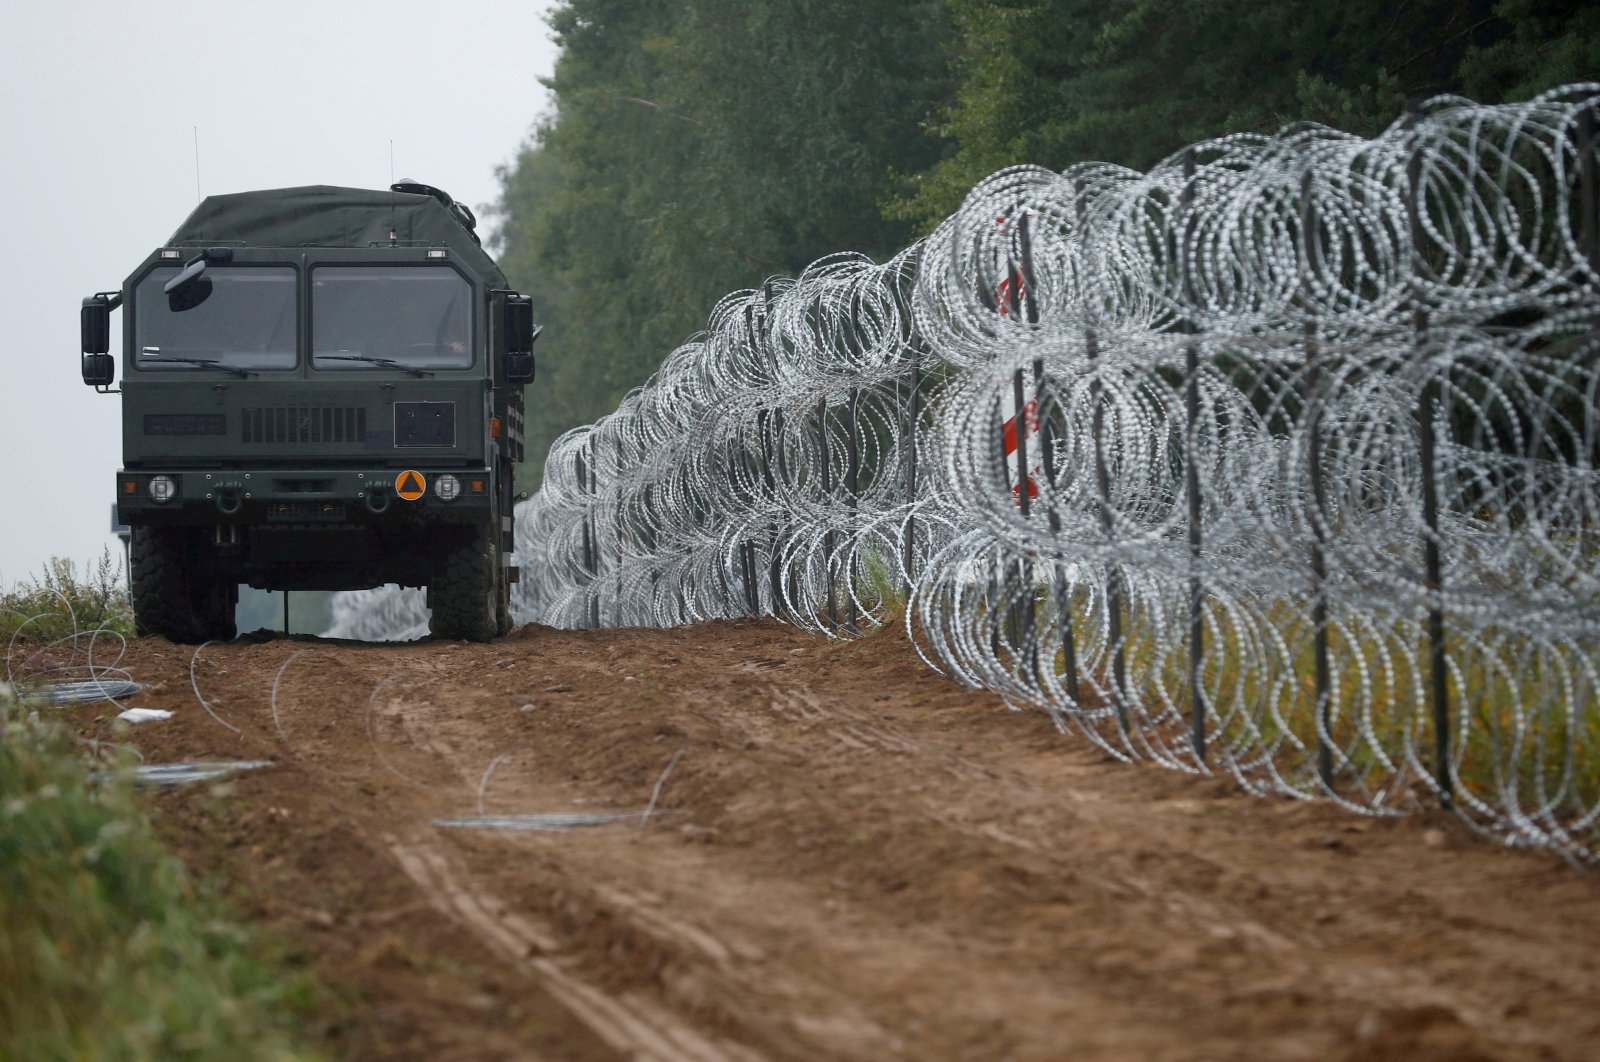 Polandia meningkatkan keamanan saat Belarus mengawal ratusan migran ke perbatasan